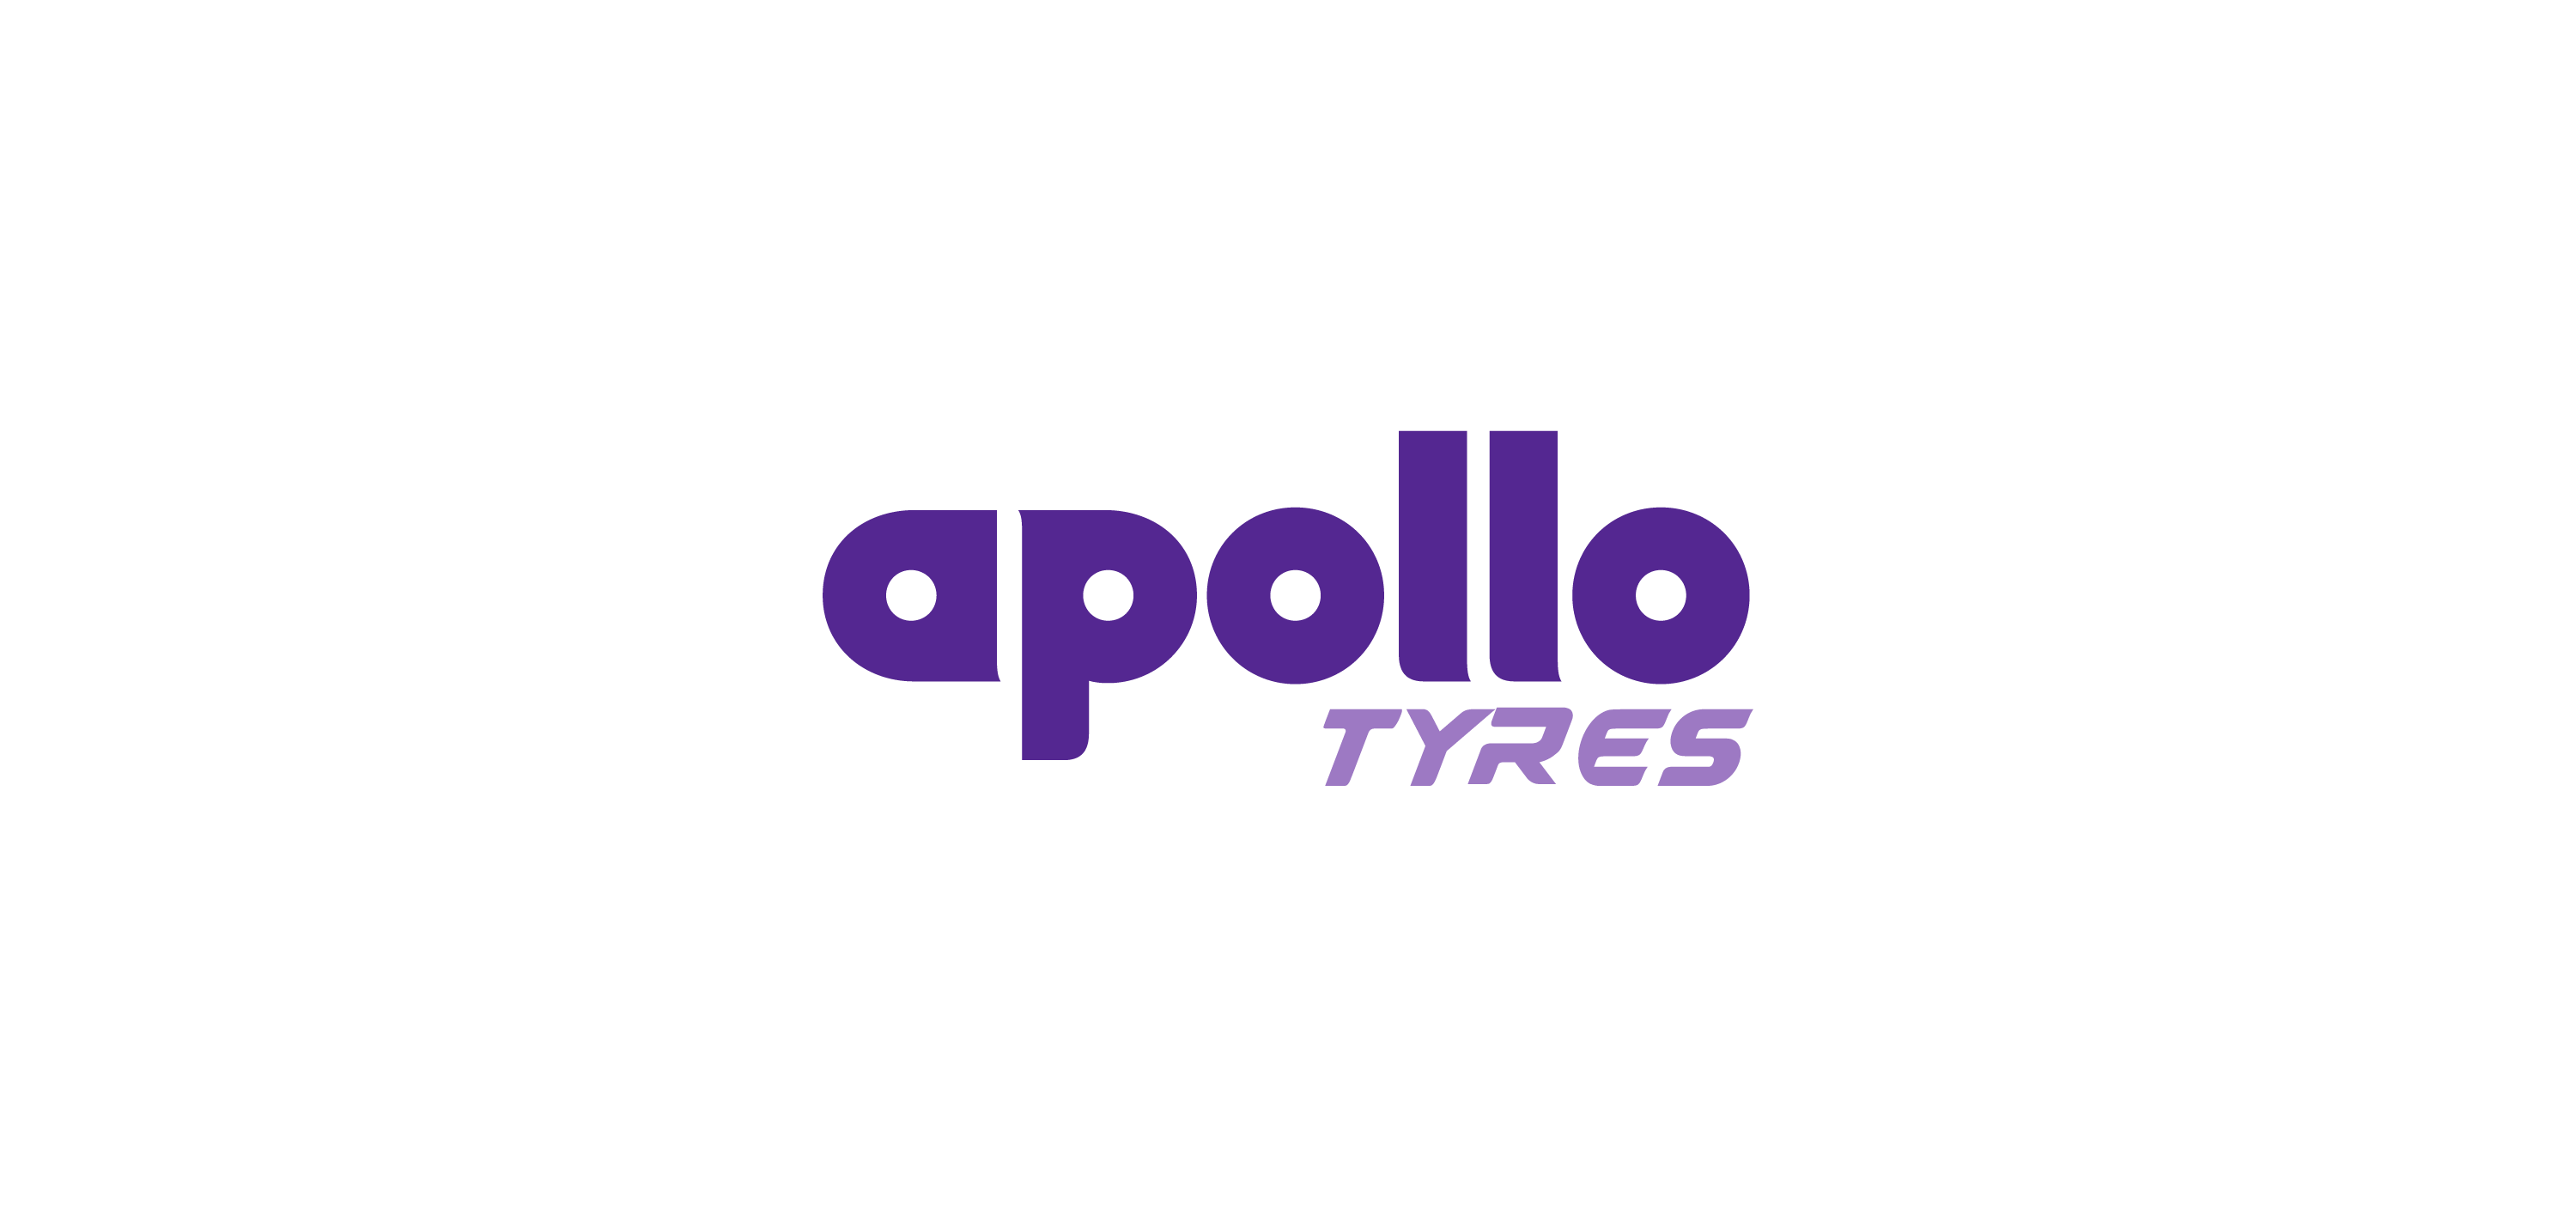 Apollo tyres logo